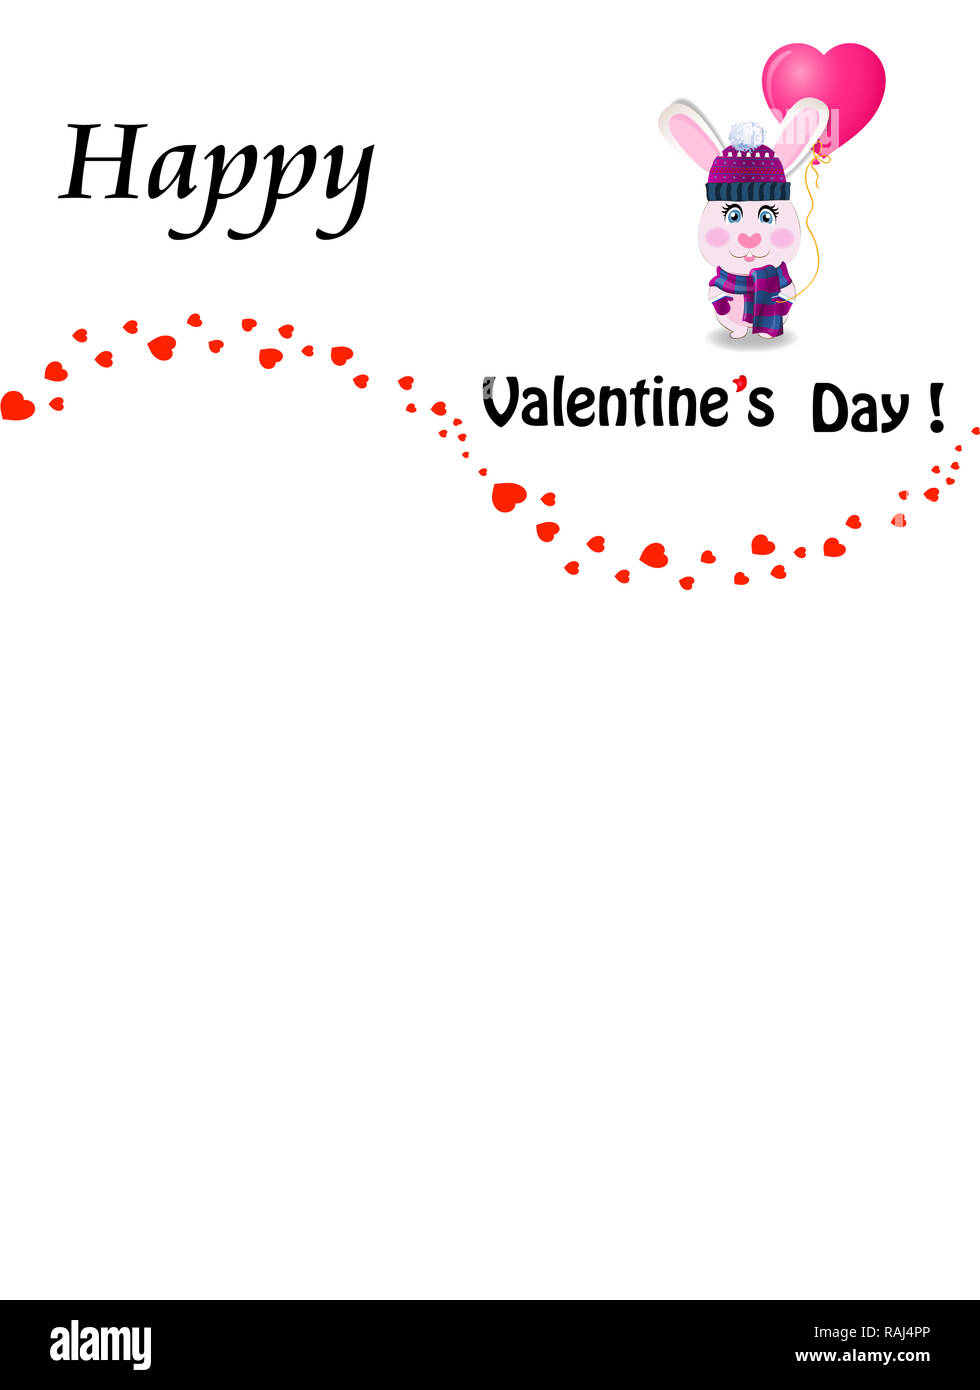 Carte de voeux de la Saint-Valentin avec cartoon en lapin tricoté violet hat holding heart shaped balloon rose et coeurs confetti frontière vague sur bac blanc Banque D'Images